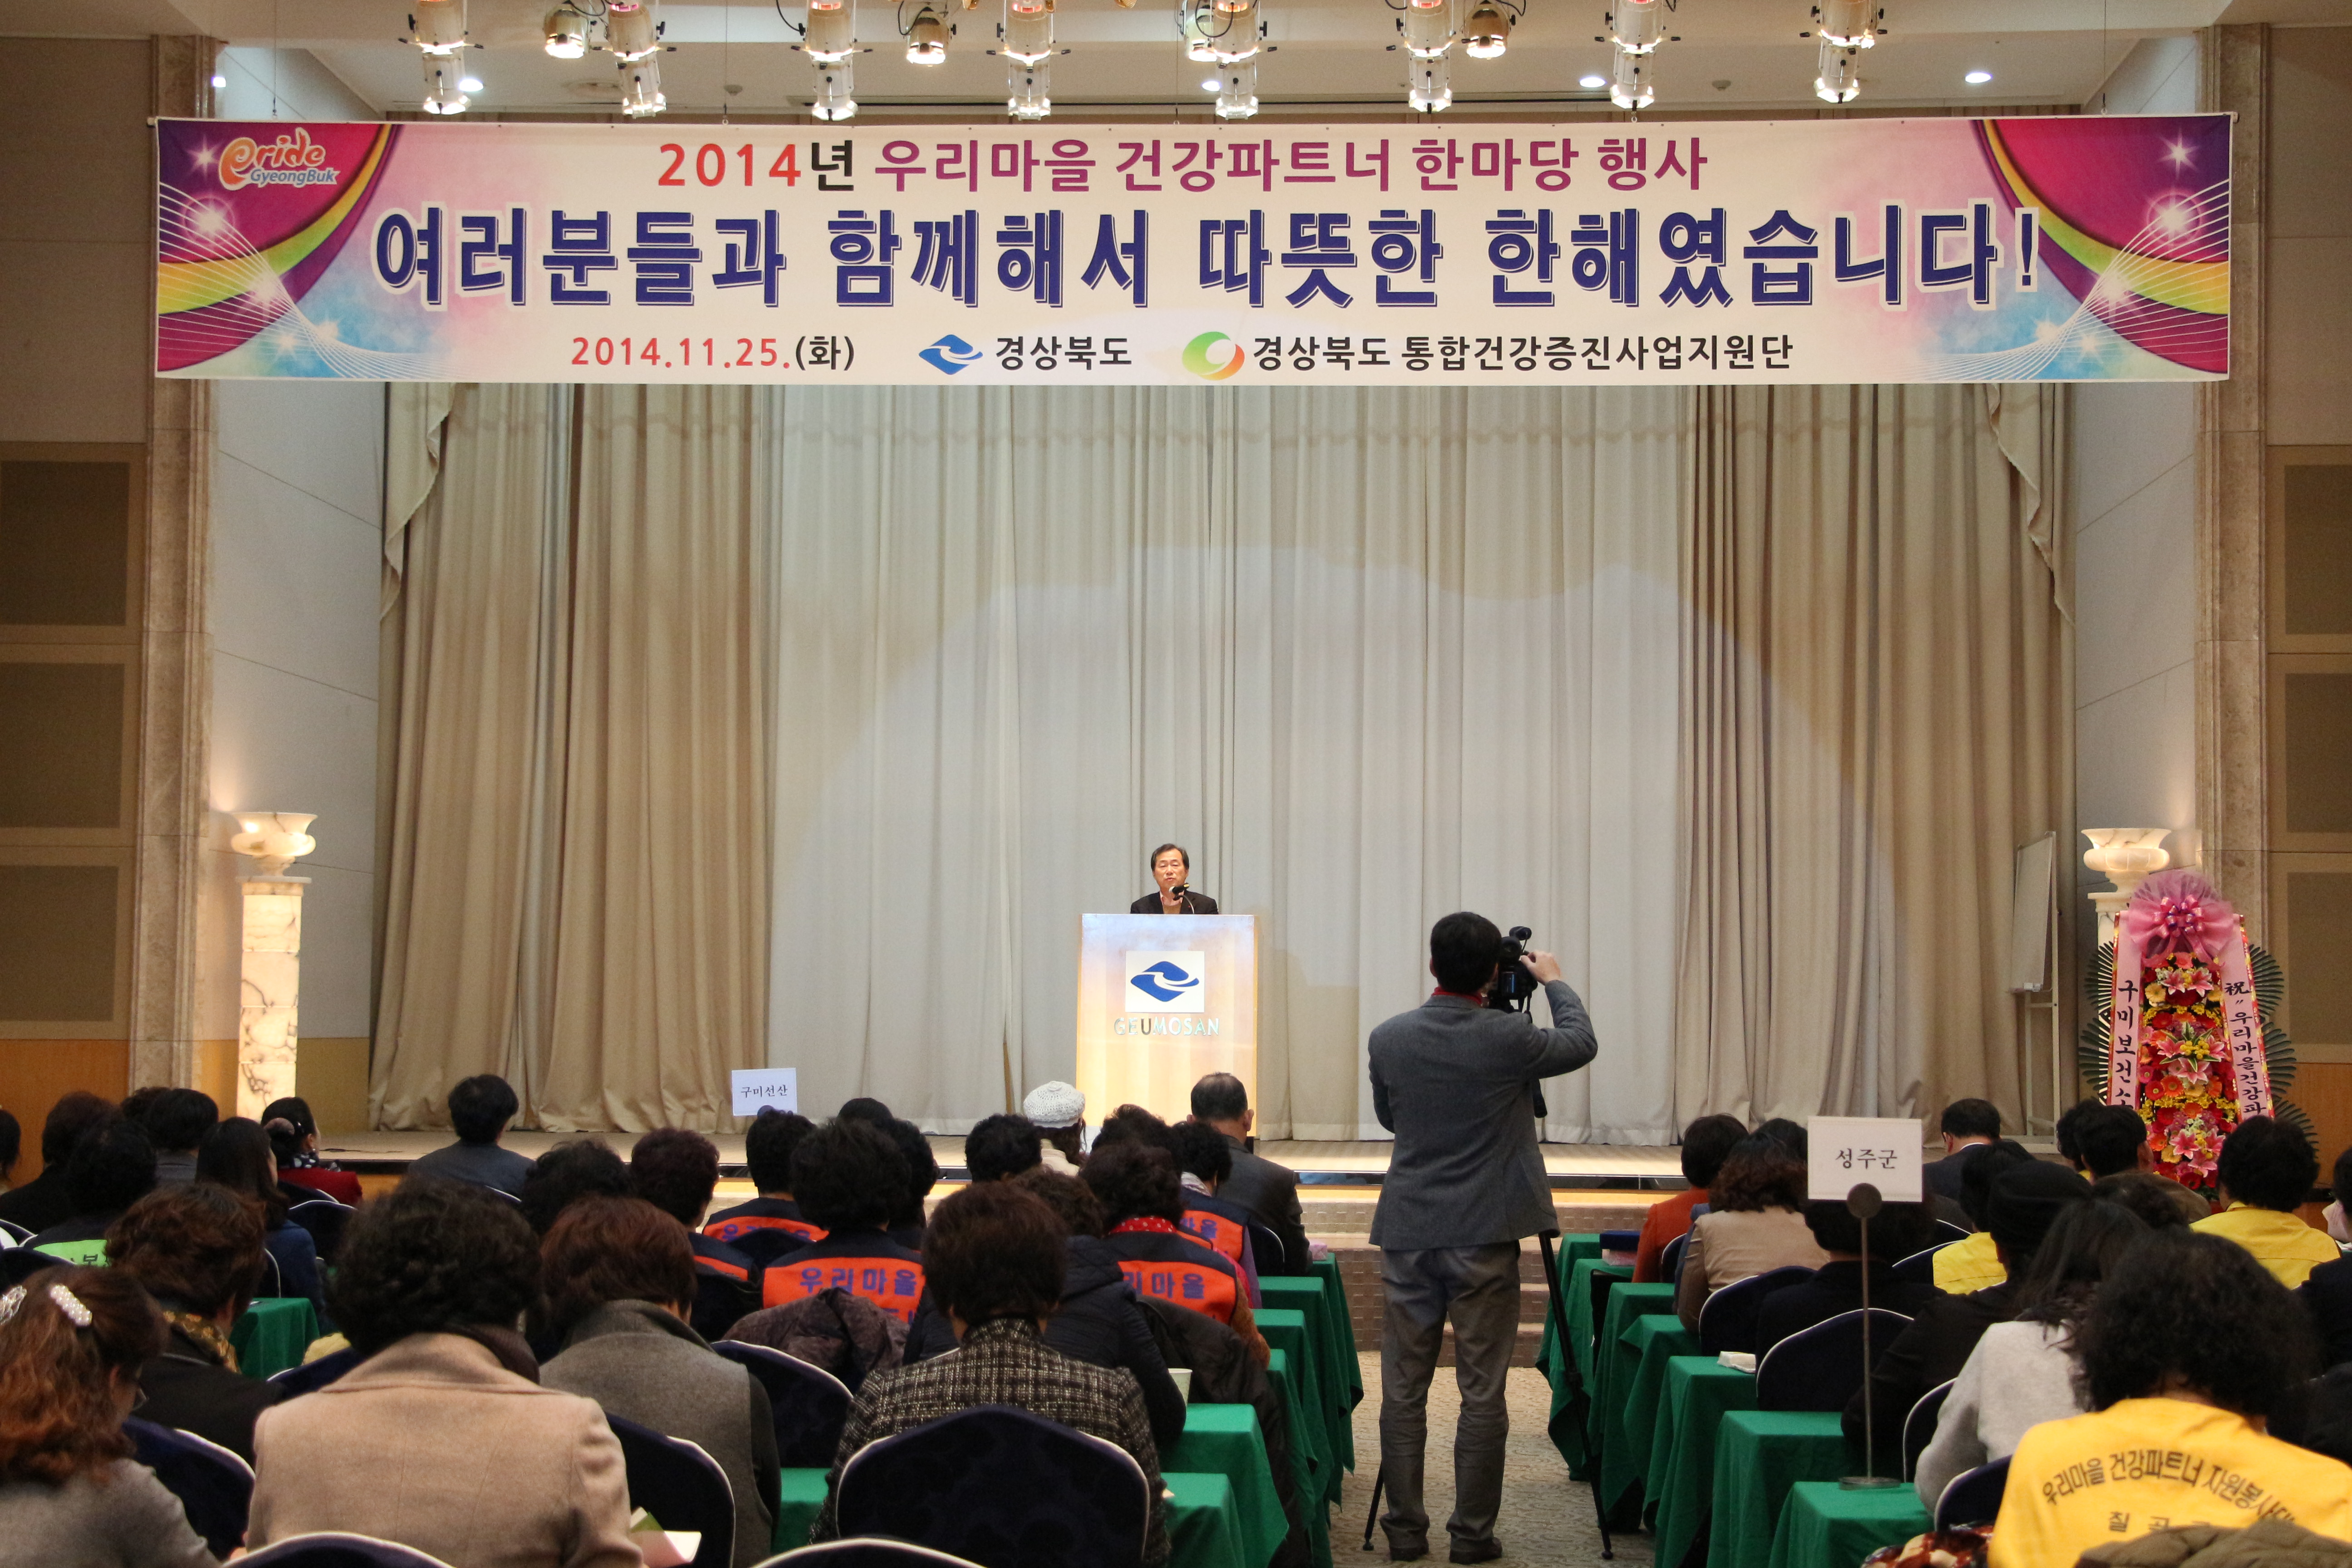 [2014년 우리마을 건강파트너 성과대회] 행사사진2